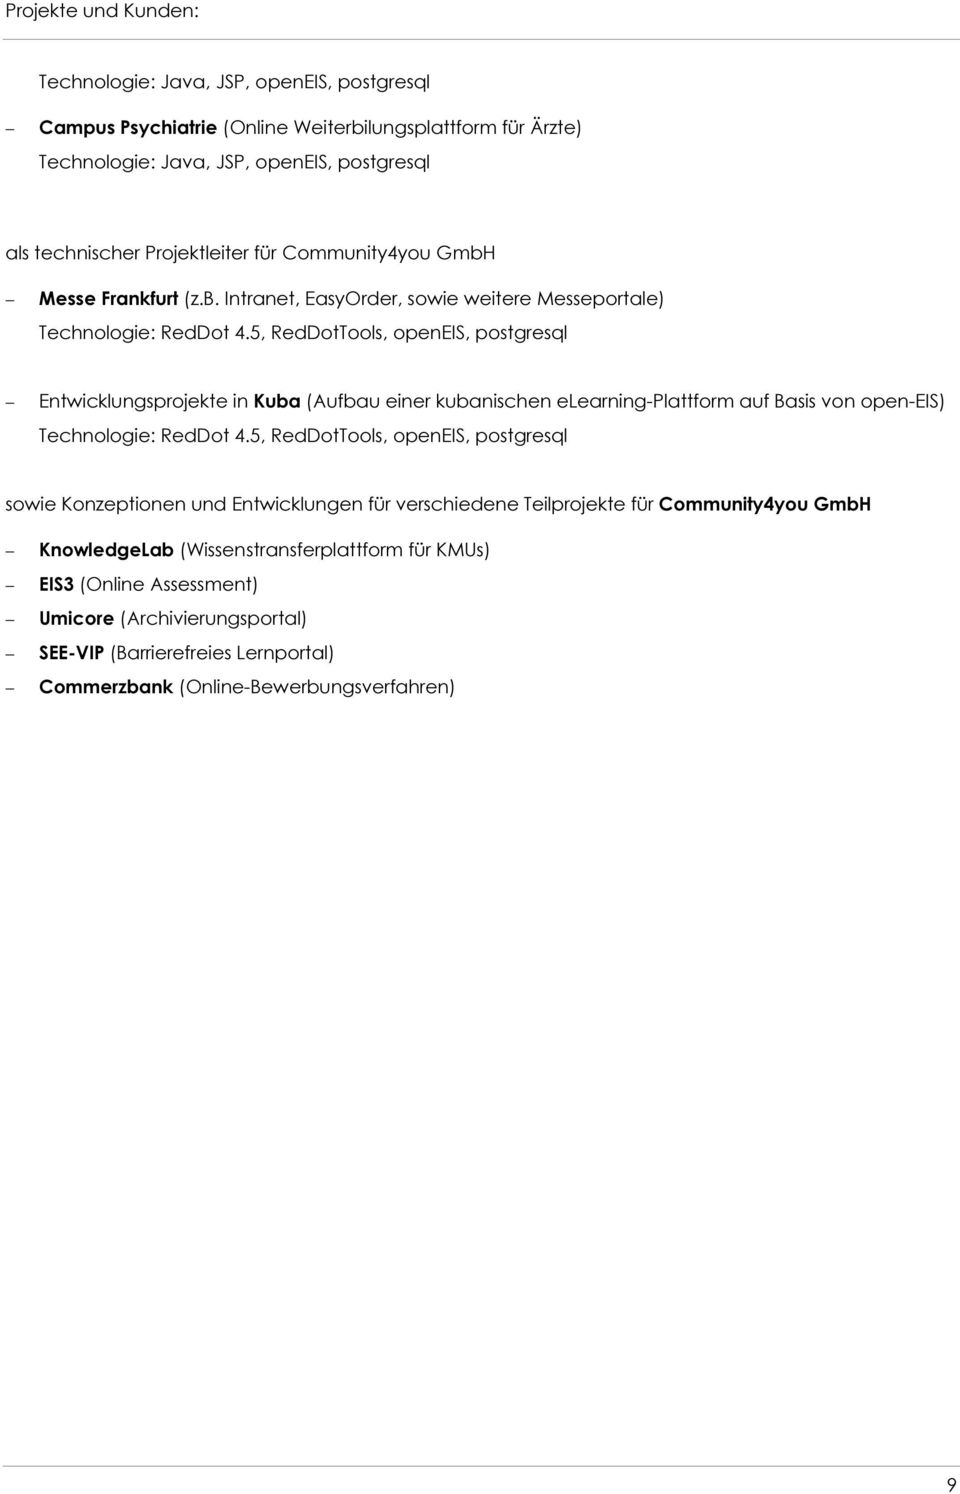 5, RedDotTools, openeis, postgresql sowie Konzeptionen und Entwicklungen für verschiedene Teilprojekte für Community4you GmbH KnowledgeLab (Wissenstransferplattform